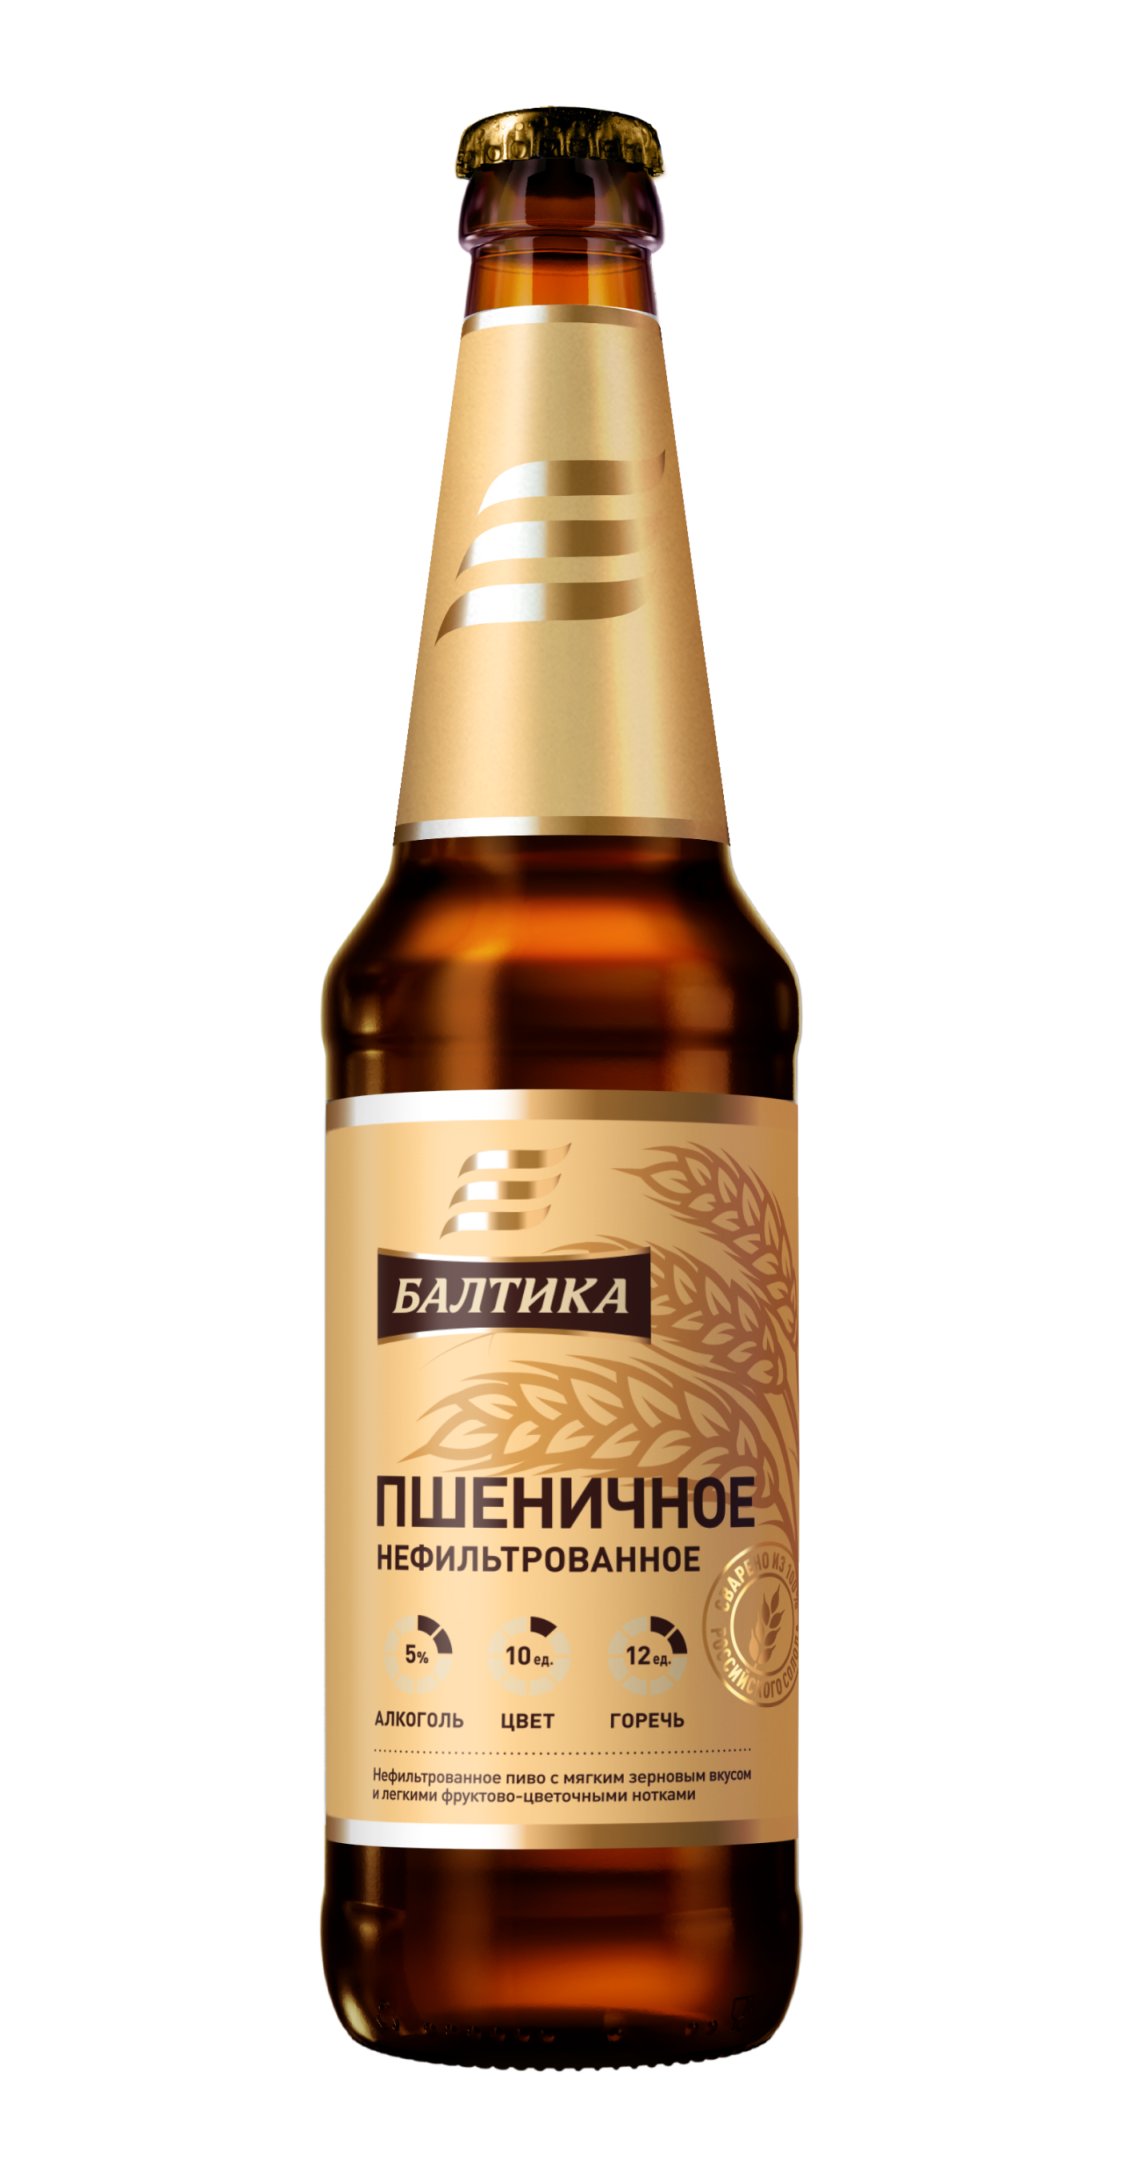 Пиво Балтика пшеничное нефильтрованное. Пиво Балтика 0 пшеничное нефильтрованное. Пиво Балтика пшеничное светлое.нефильтр.5 0.45л. Балтика пшеничное нефильтрованное 0.45.